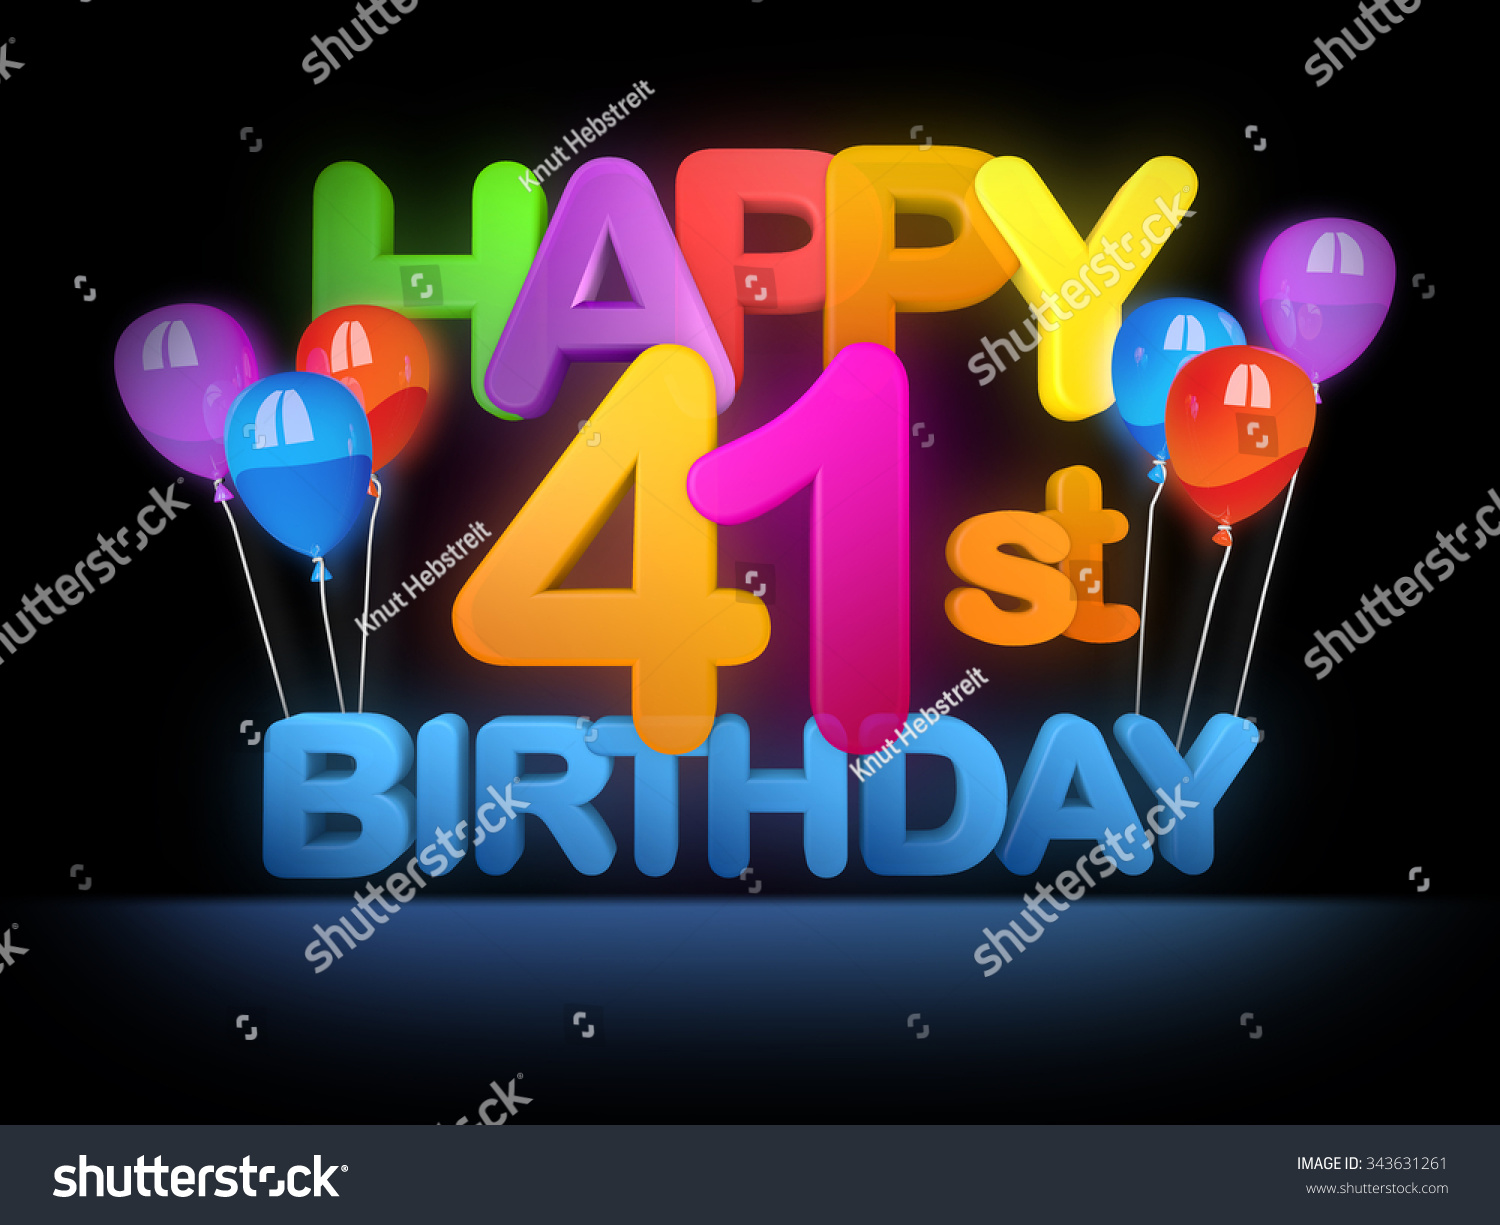 Happy 41st Birthday Images Photos Et Images Vectorielles De Stock Shutterstock 